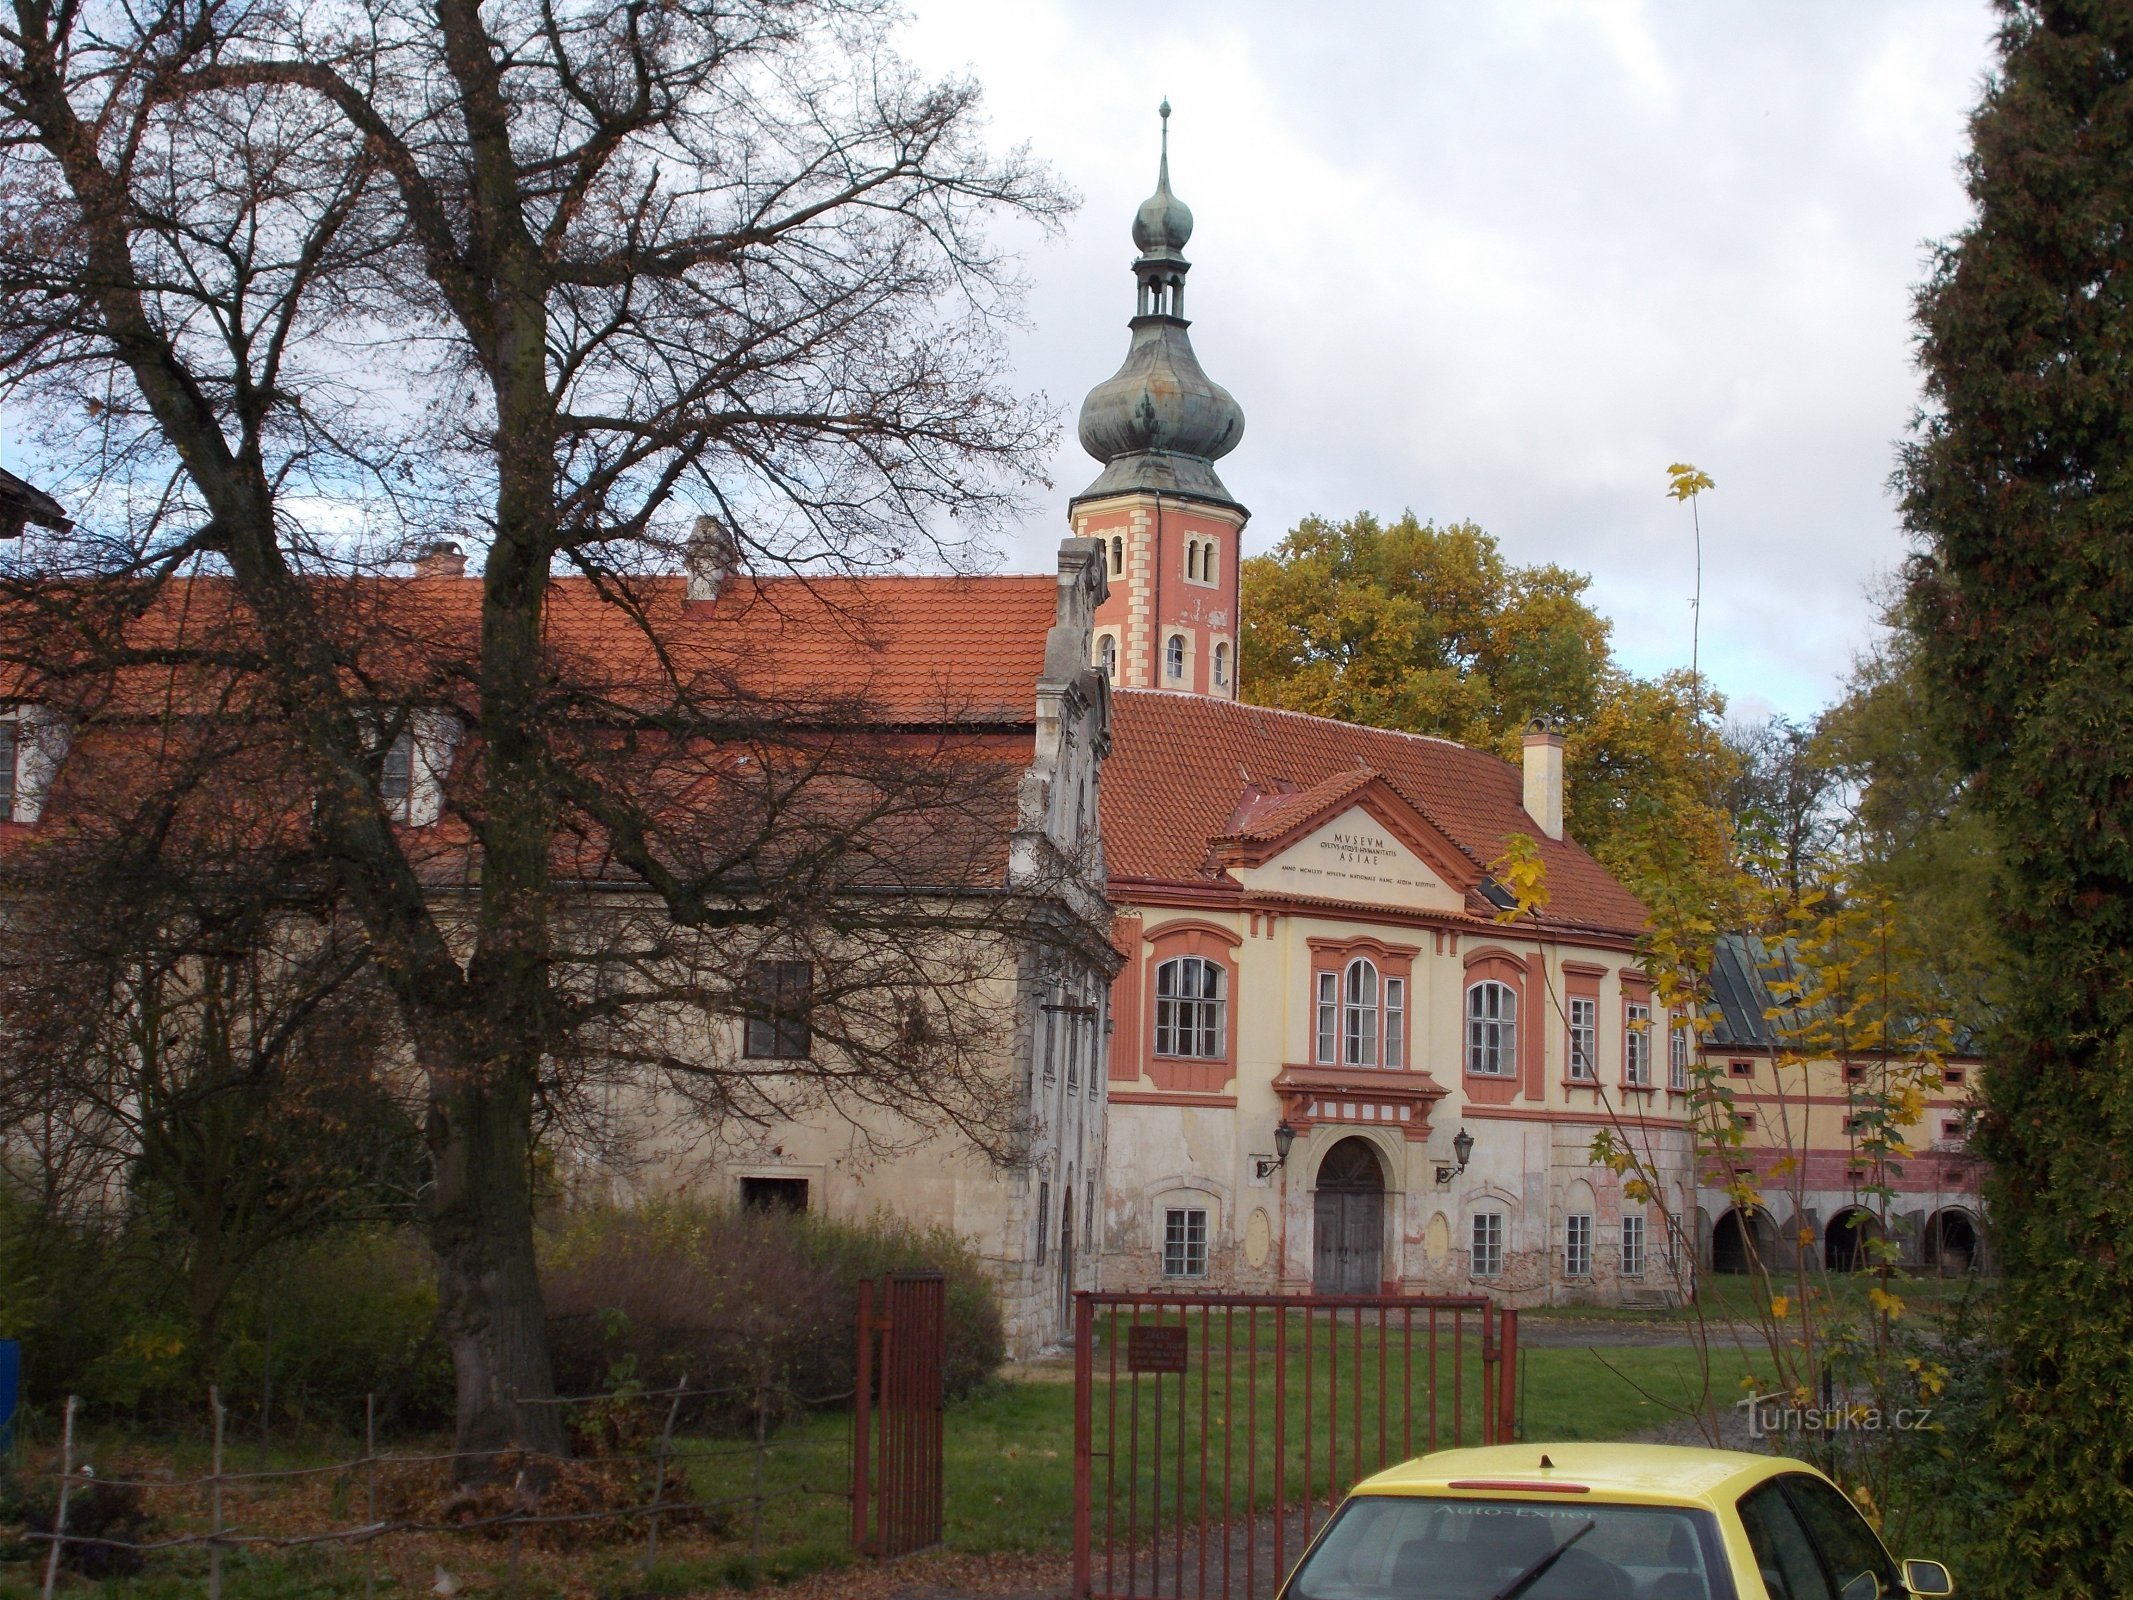 Castelul Liběchov